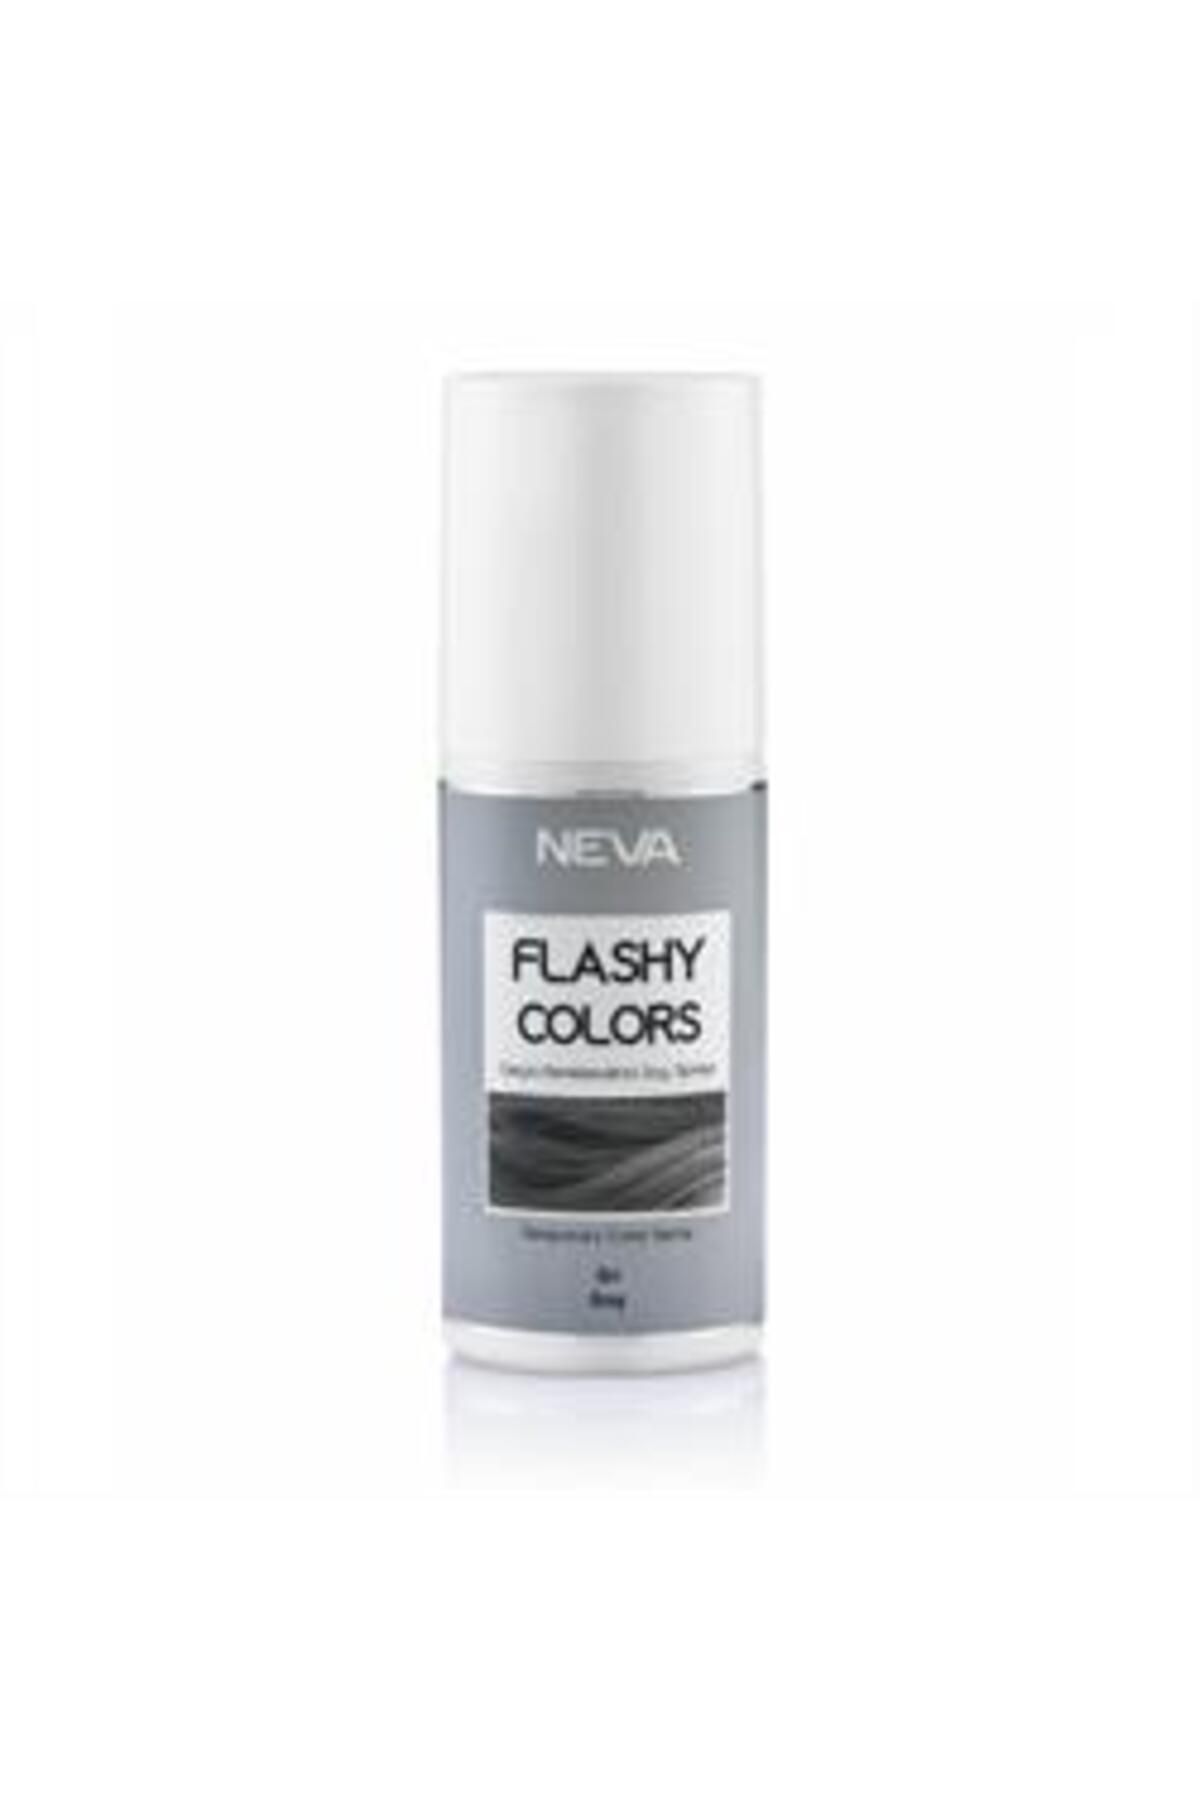 Neva Flashy Colors Geçici Renklendirici Saç Spreyi Gri 75ml ( 1 ADET )